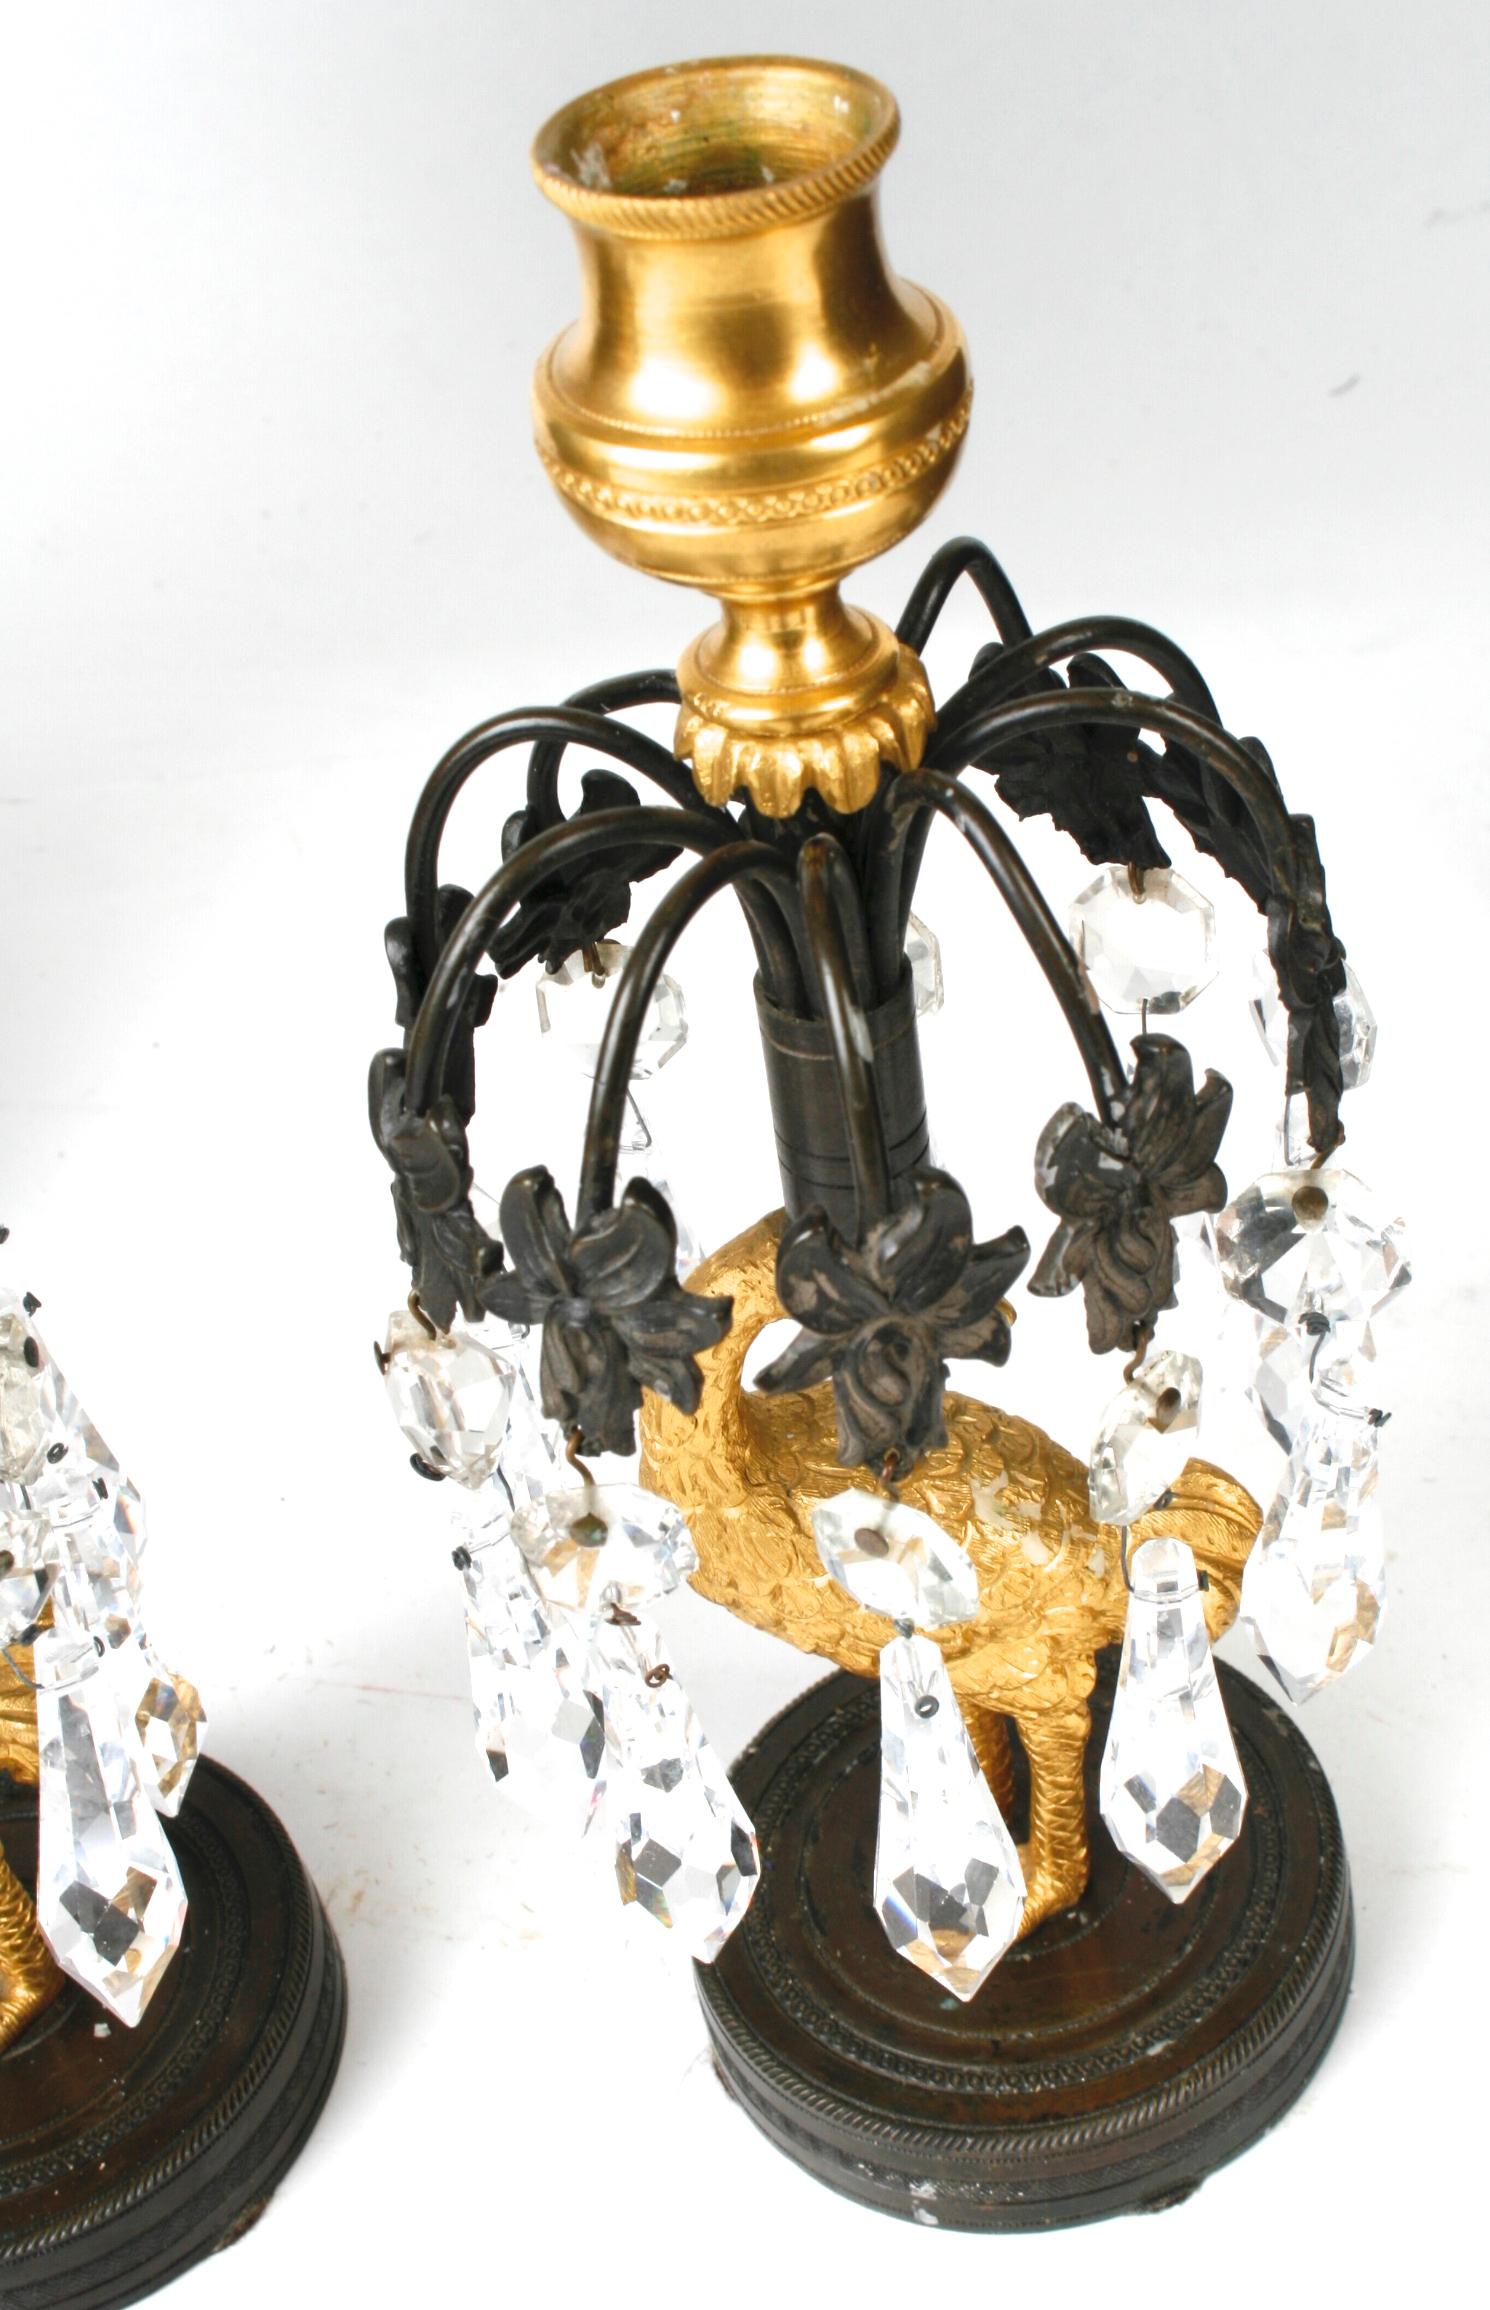 Paire de chandeliers de la période Regency du début du 19e siècle en bronze doré et patiné. Chacune d'entre elles présente des gerbes de fleurs avec des lustres en cristal, soutenues par des tiges en forme d'autruche dorée reposant sur des bases